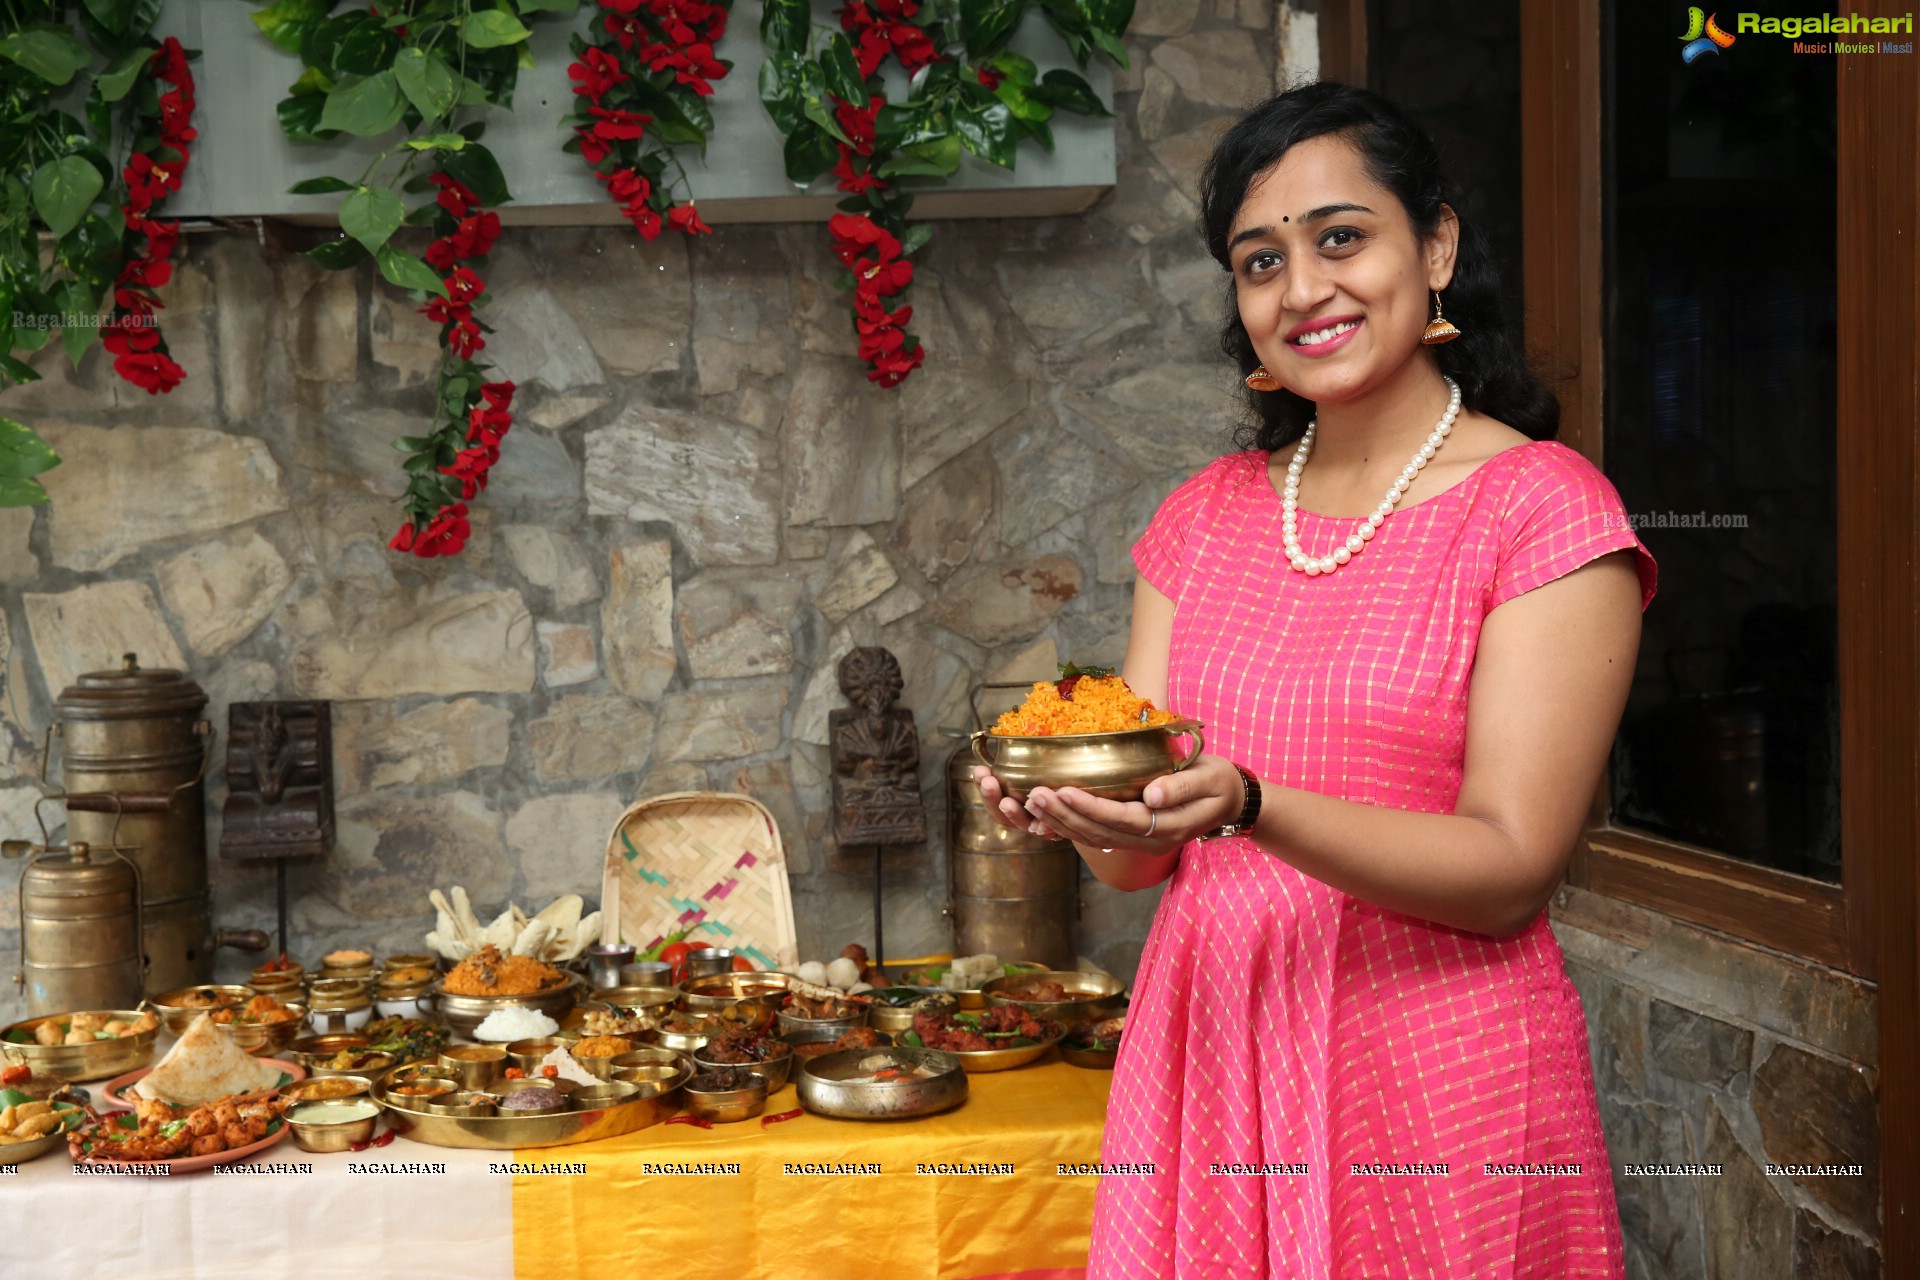 Rayalaseema Ruchulu Food Festival - Aha! Rayalaseema - at Jubilee Hills